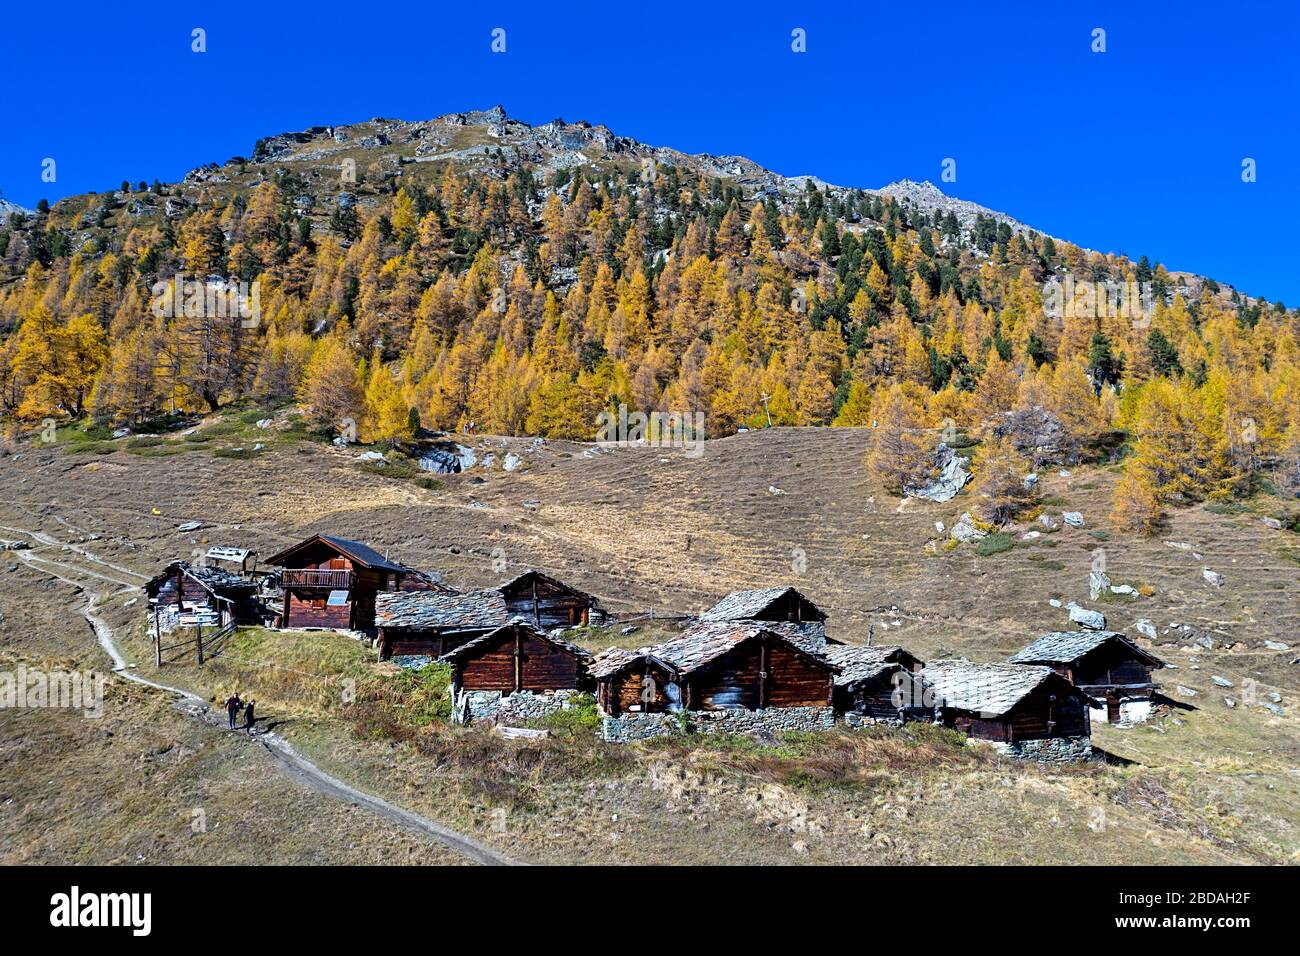 Le hameau du Louché au pied d'une forêt de mélèze aux couleurs vives de l'automne, Val d'Herens, Eringertal, Valais, Suisse Banque D'Images